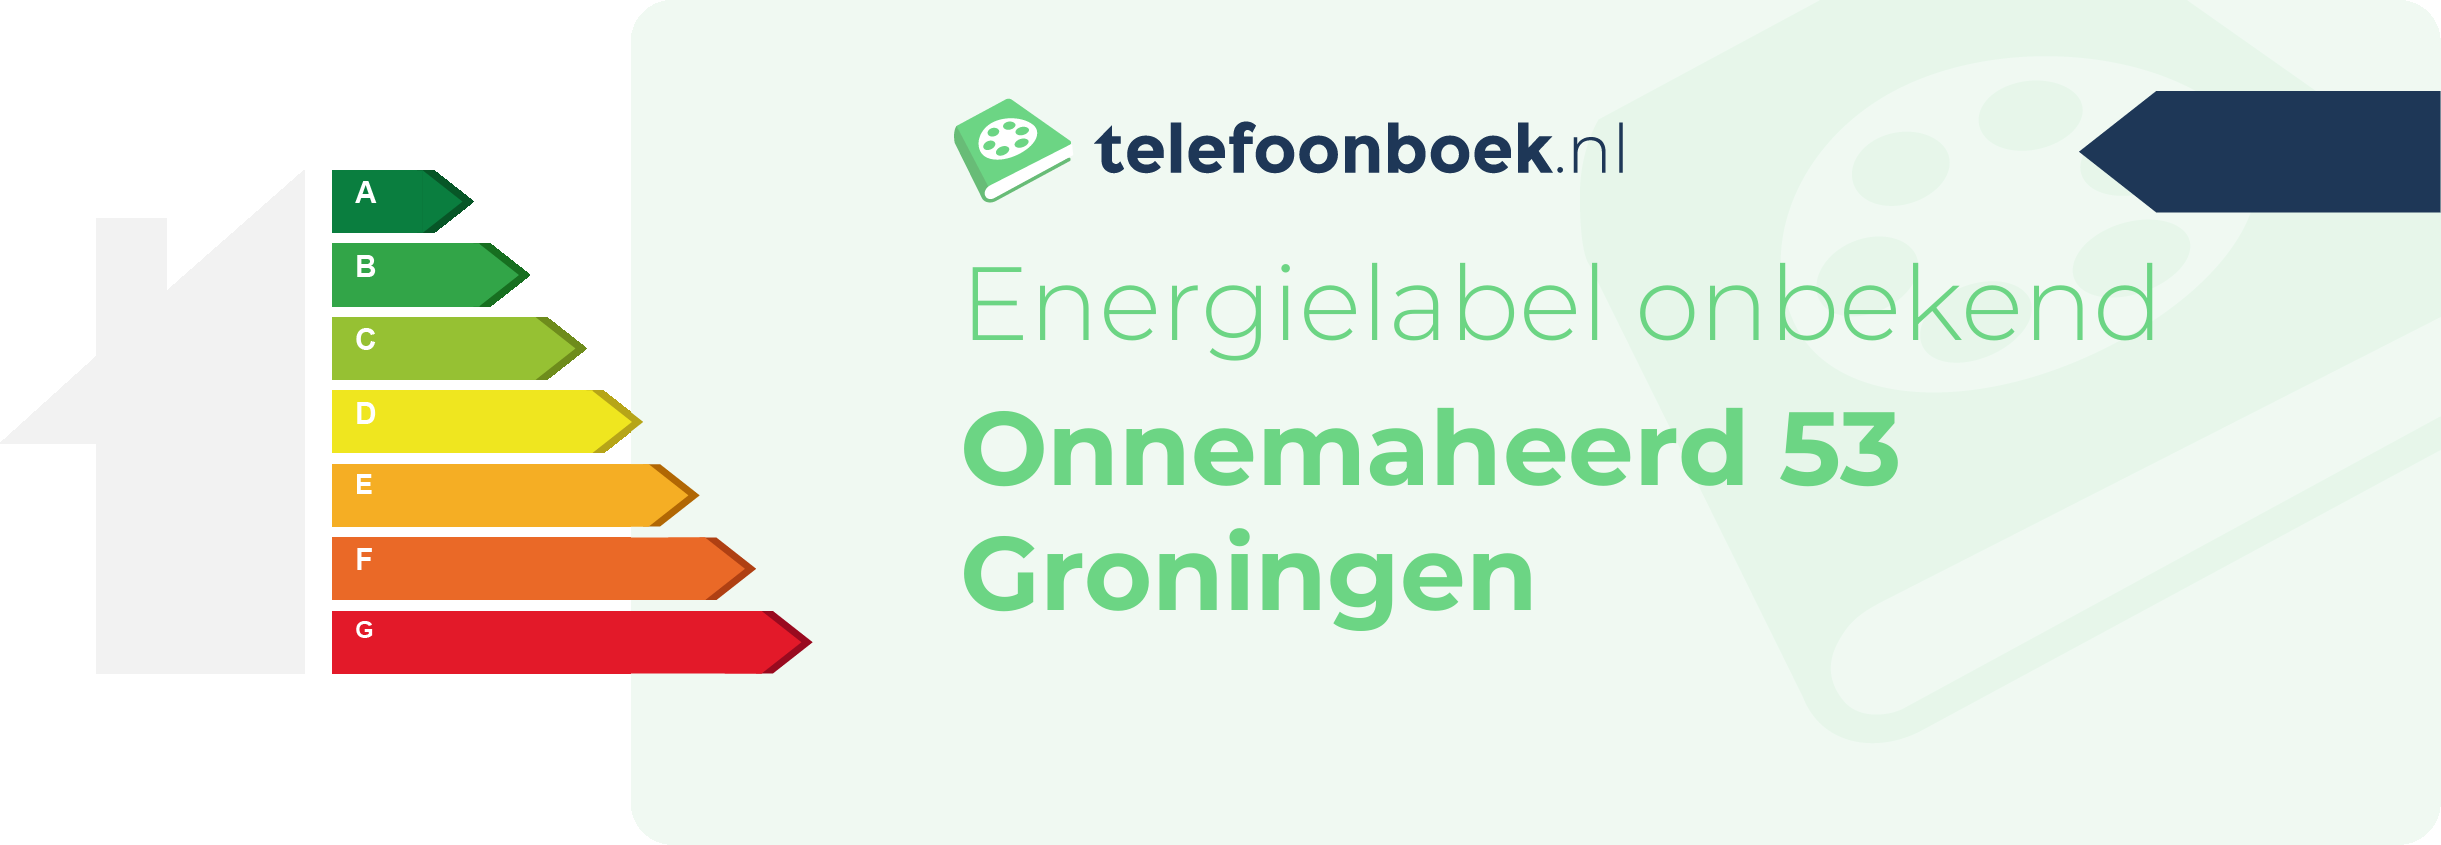 Energielabel Onnemaheerd 53 Groningen